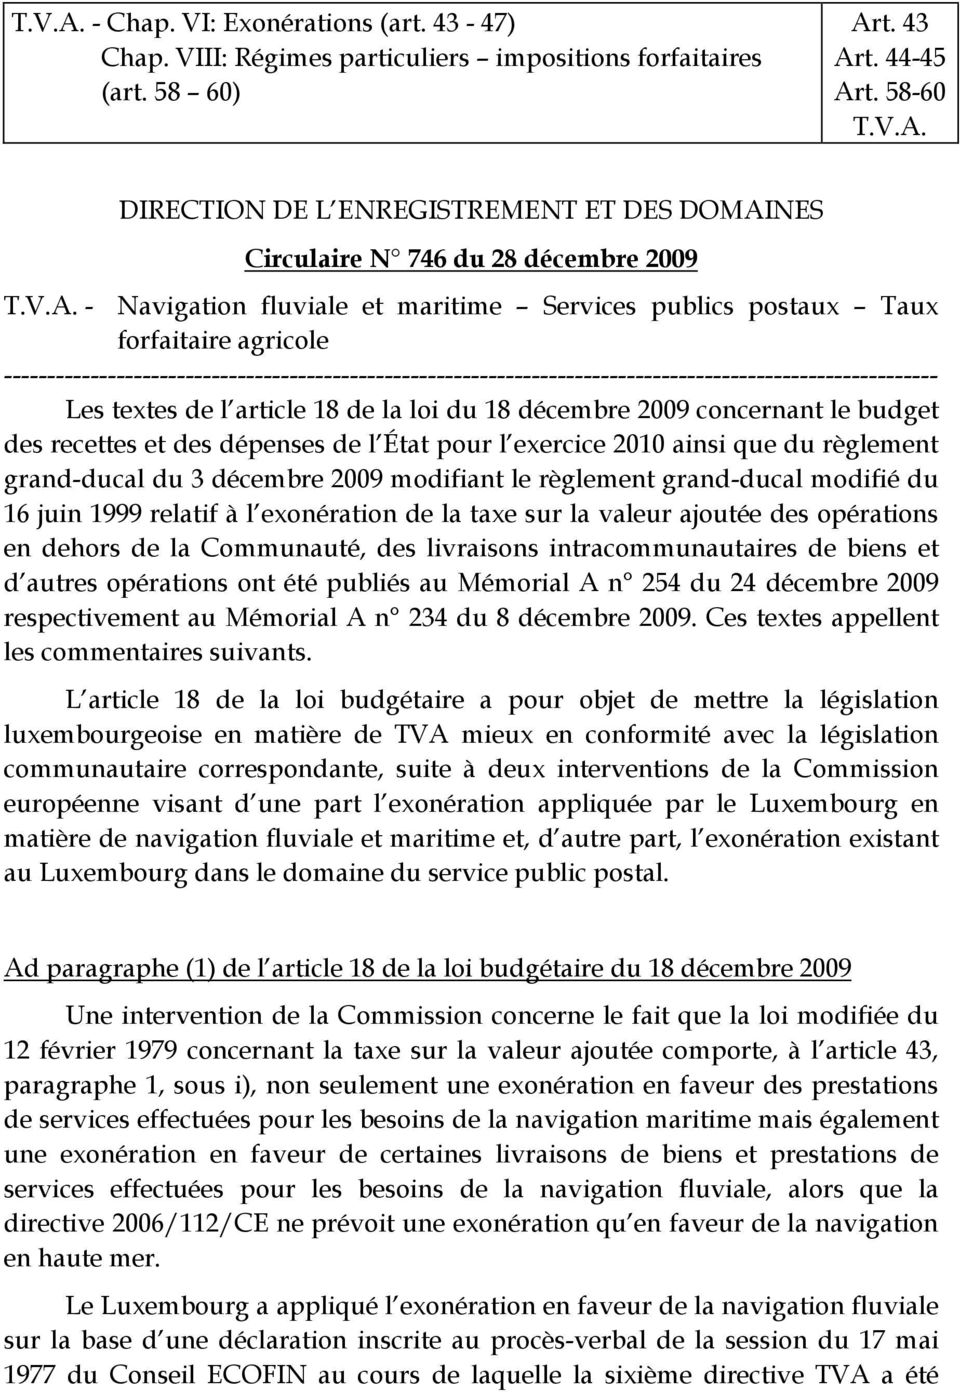 Les textes de l article 18 de la loi du 18 décembre 2009 concernant le budget des recettes et des dépenses de l État pour l exercice 2010 ainsi que du règlement grand-ducal du 3 décembre 2009